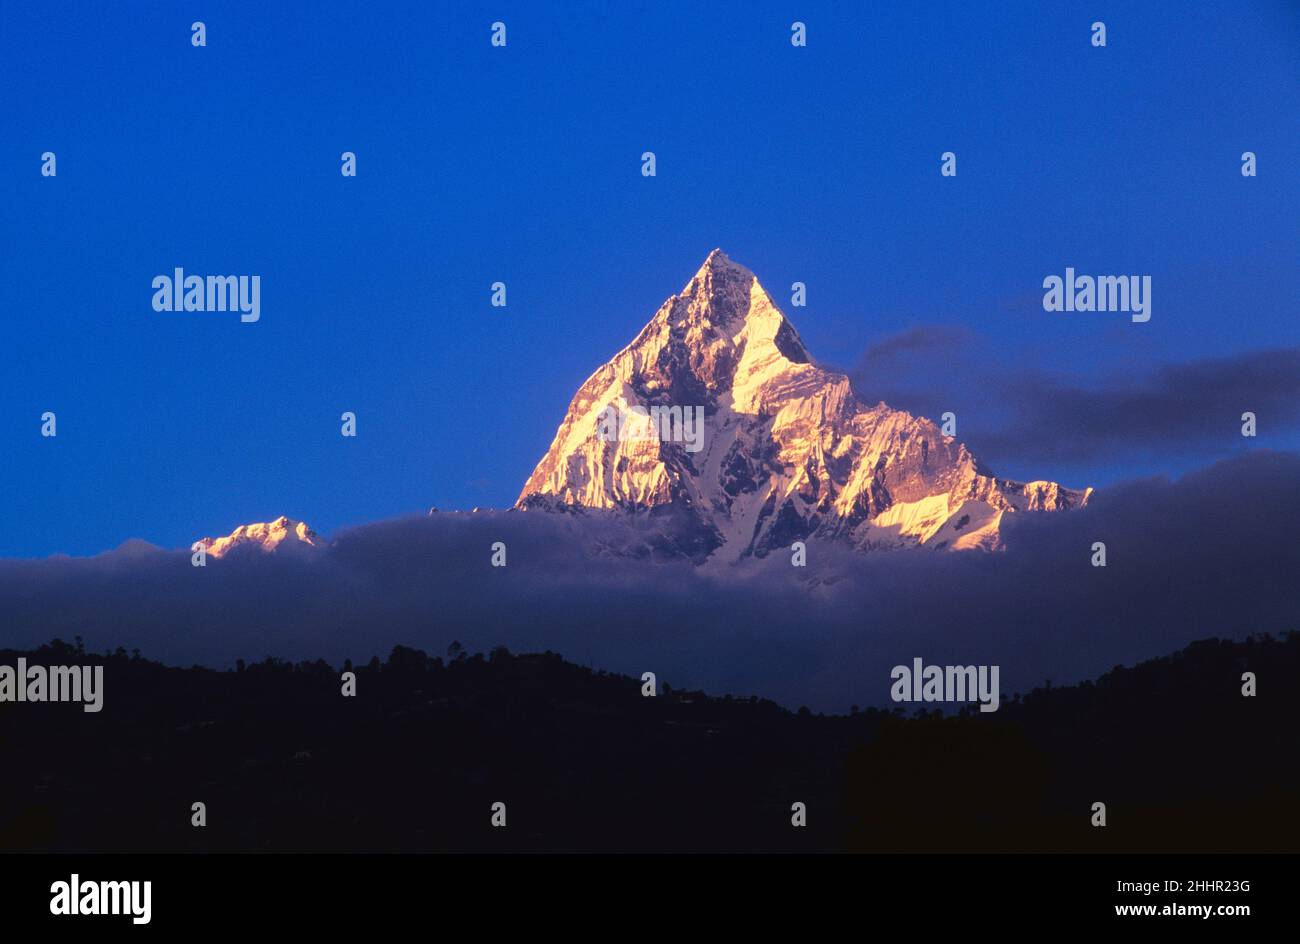 MachhapuchhareMountain Peak at Sunrise, Annapurna Range, Nepal Stock Photo